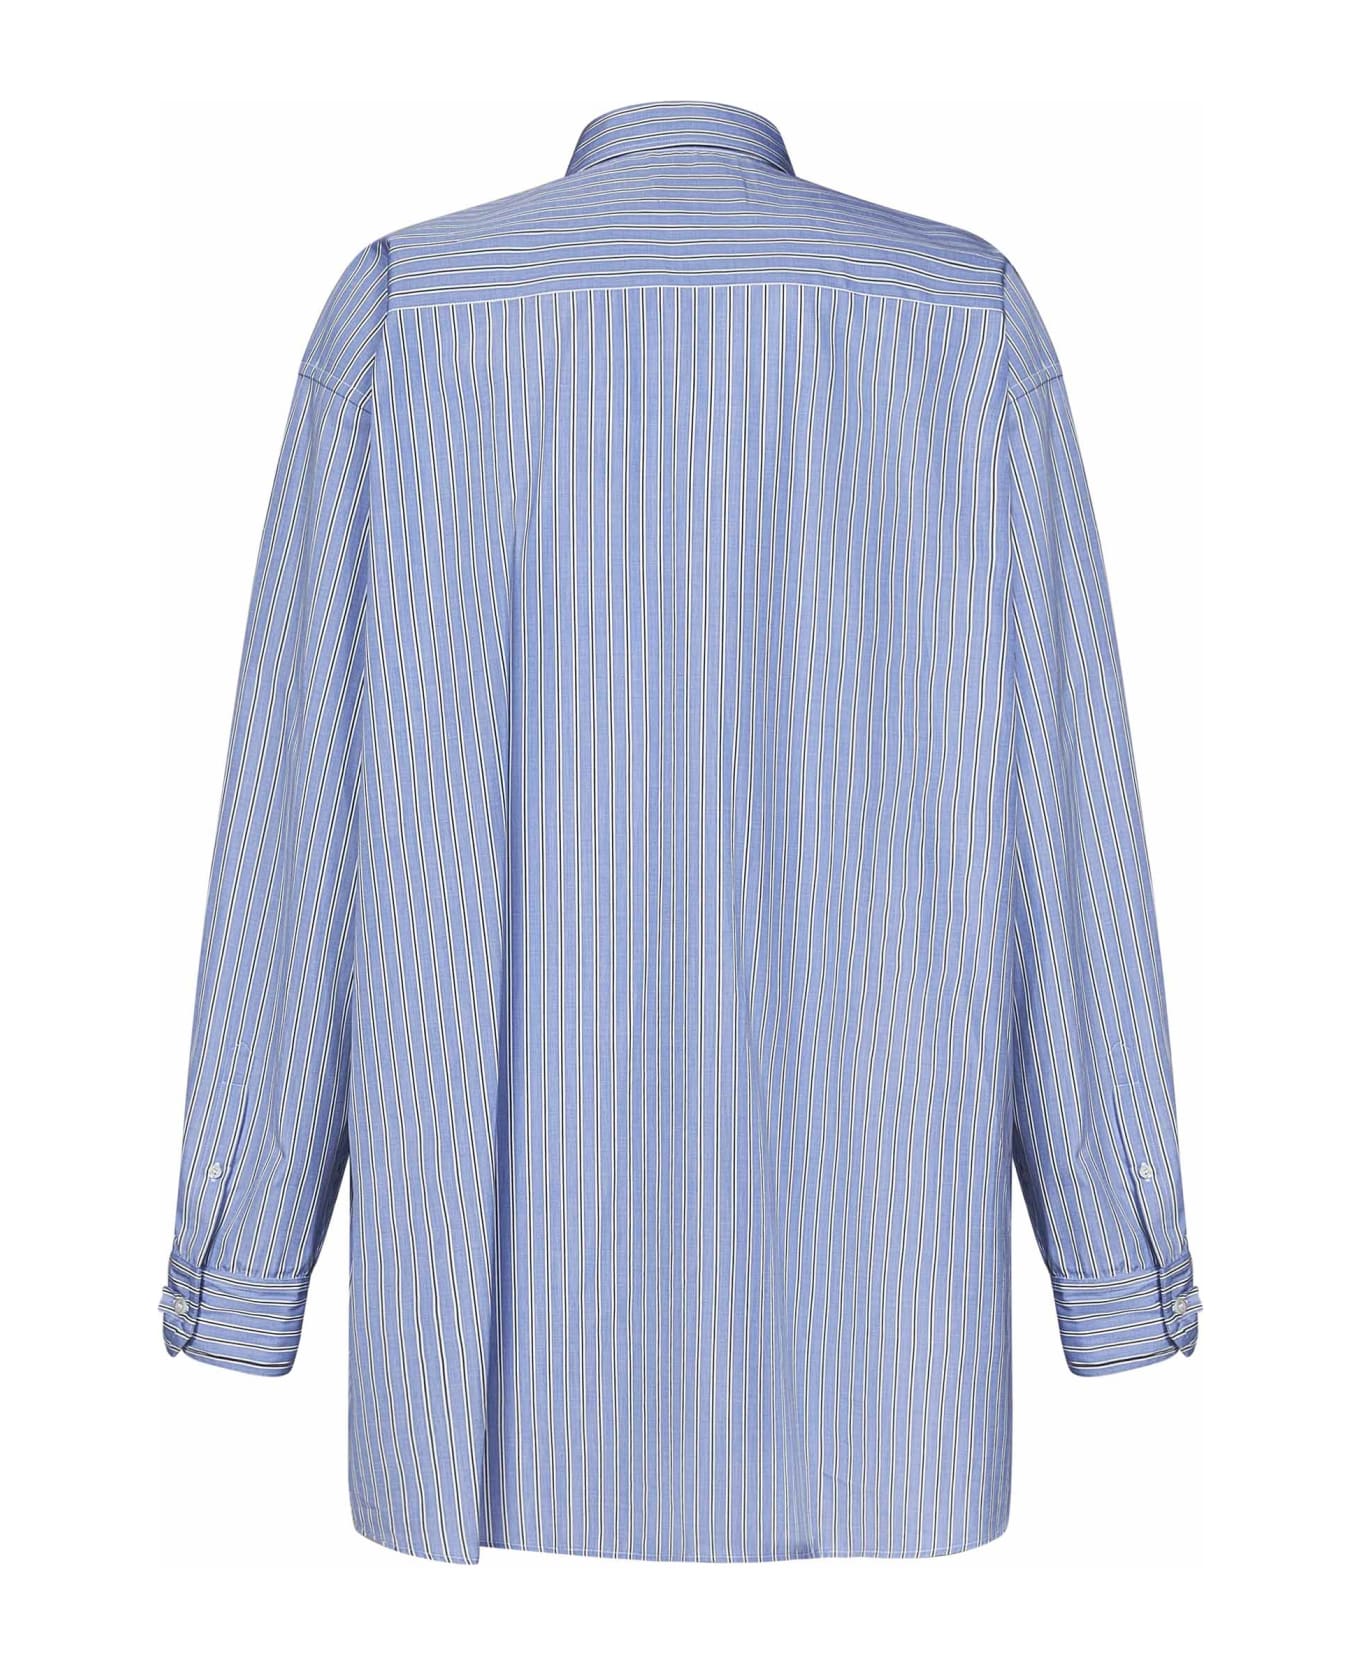 Maison Margiela Striped Oversize Shirt - Blue